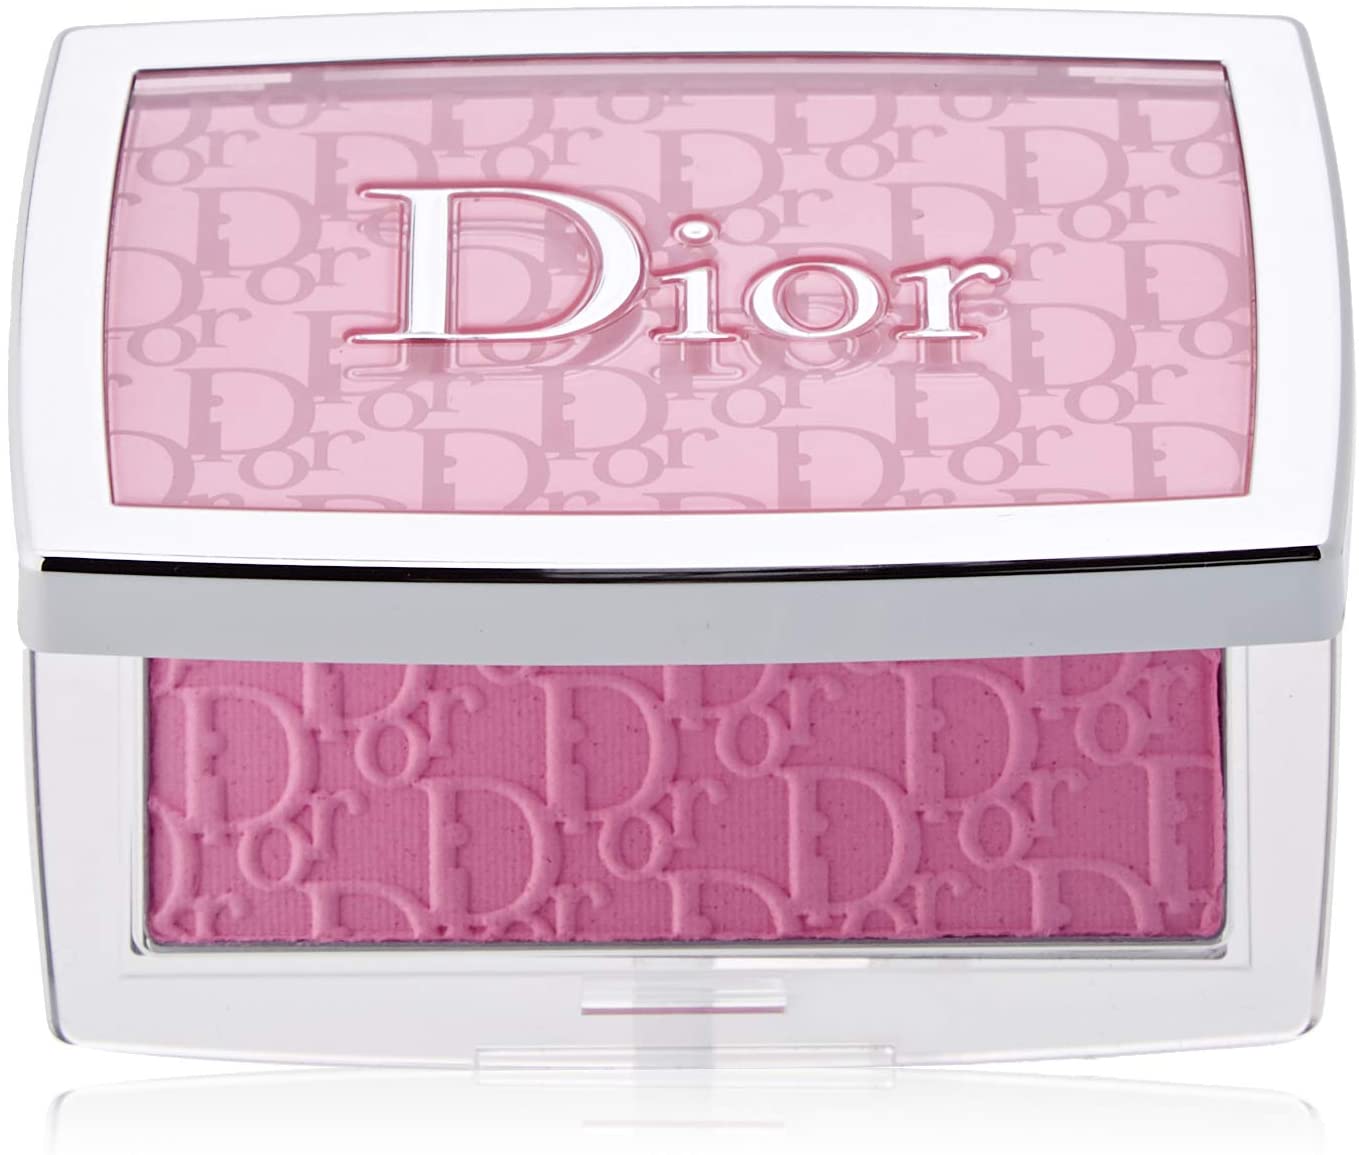 Dior(ディオール) バックステージ ロージー グロウの商品画像1 